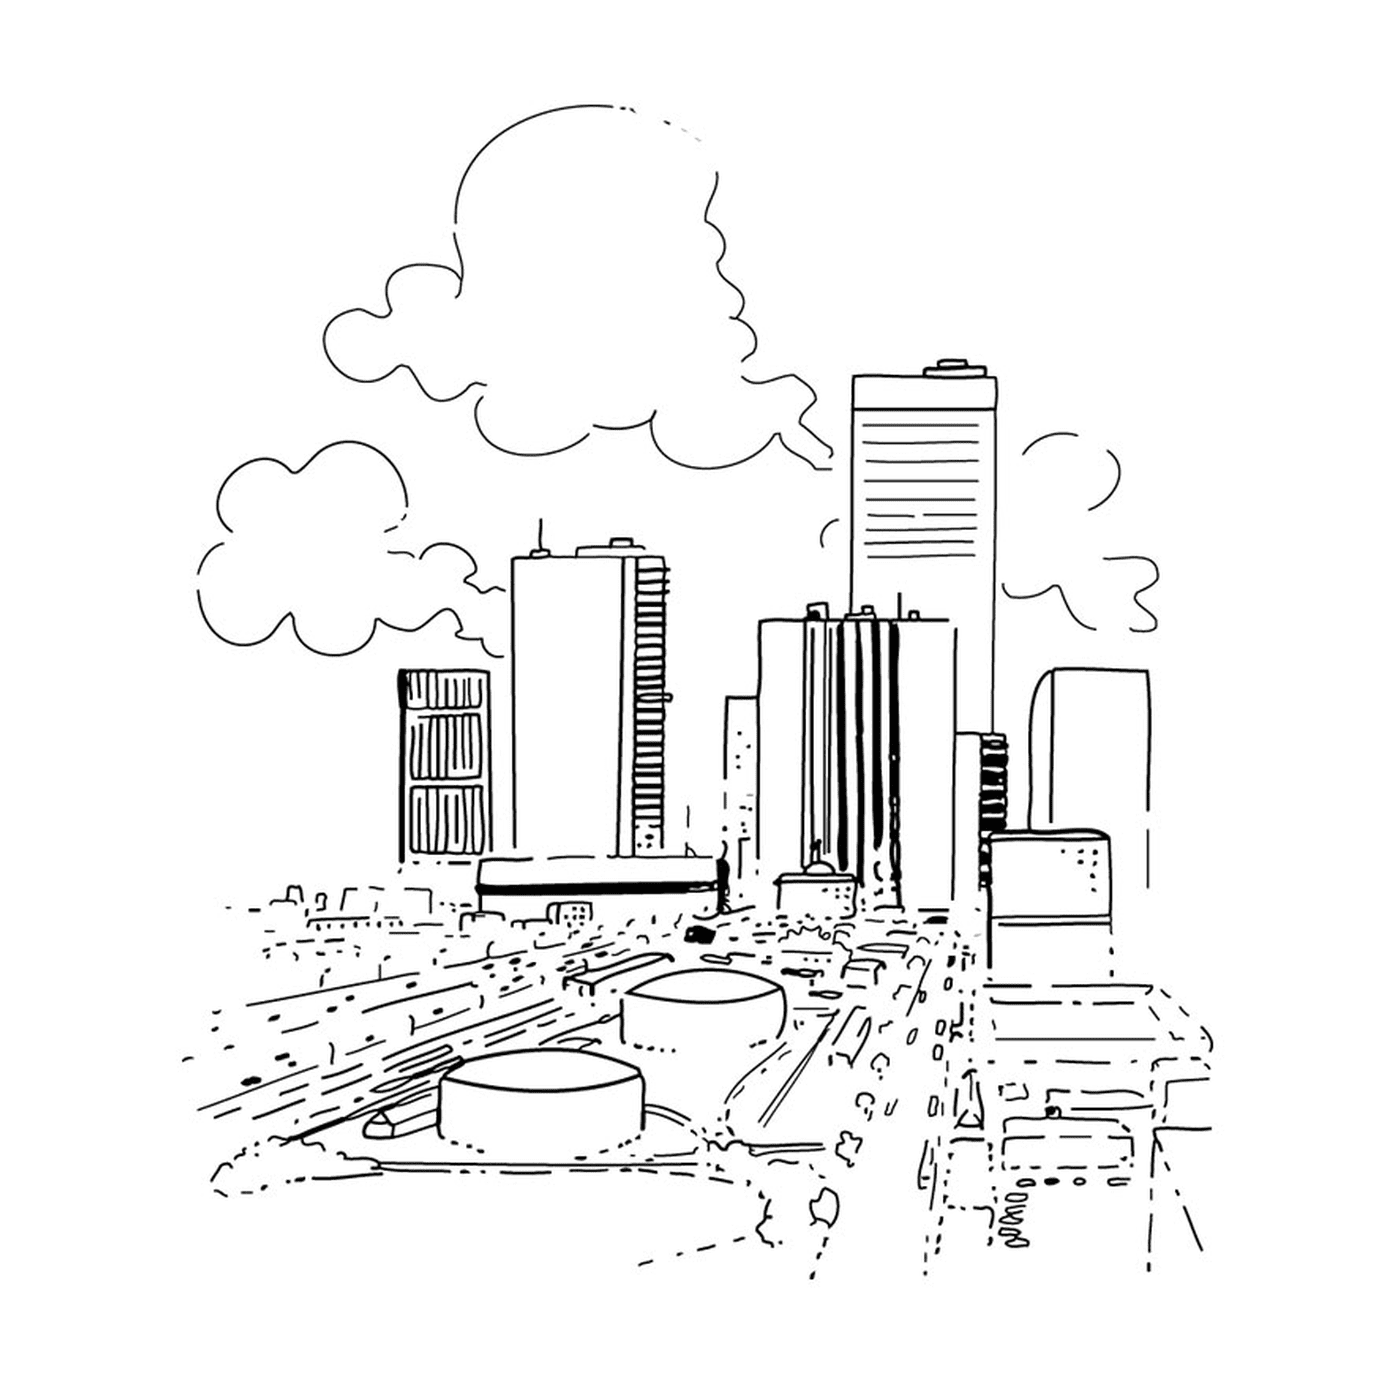  शहर, कार और बादल के साथ 